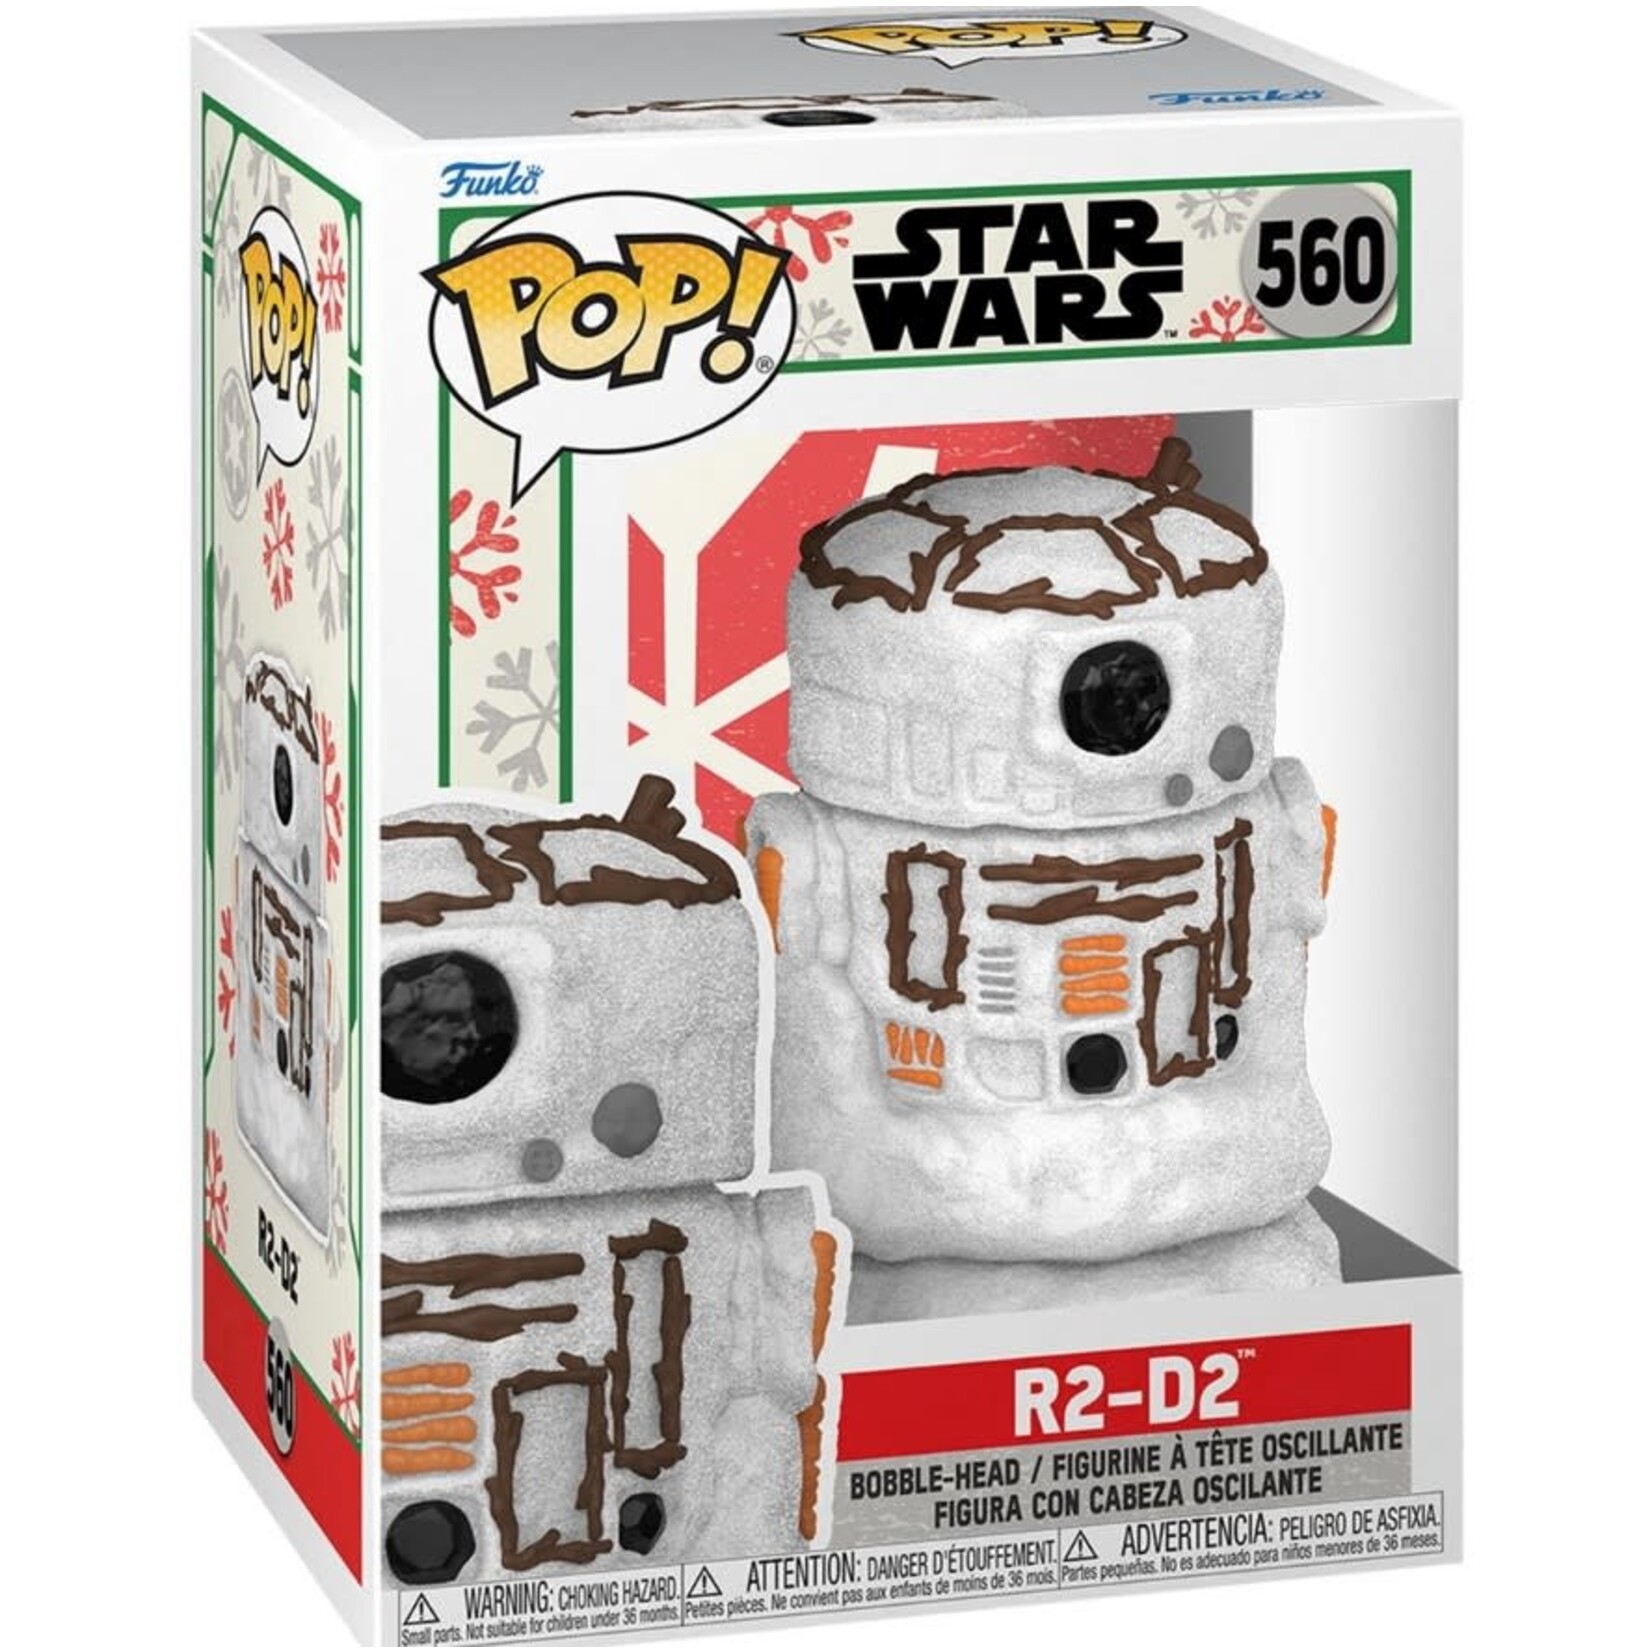 Star Wars Star Wars - Holiday R2-D2 Snowman Pop! Figure